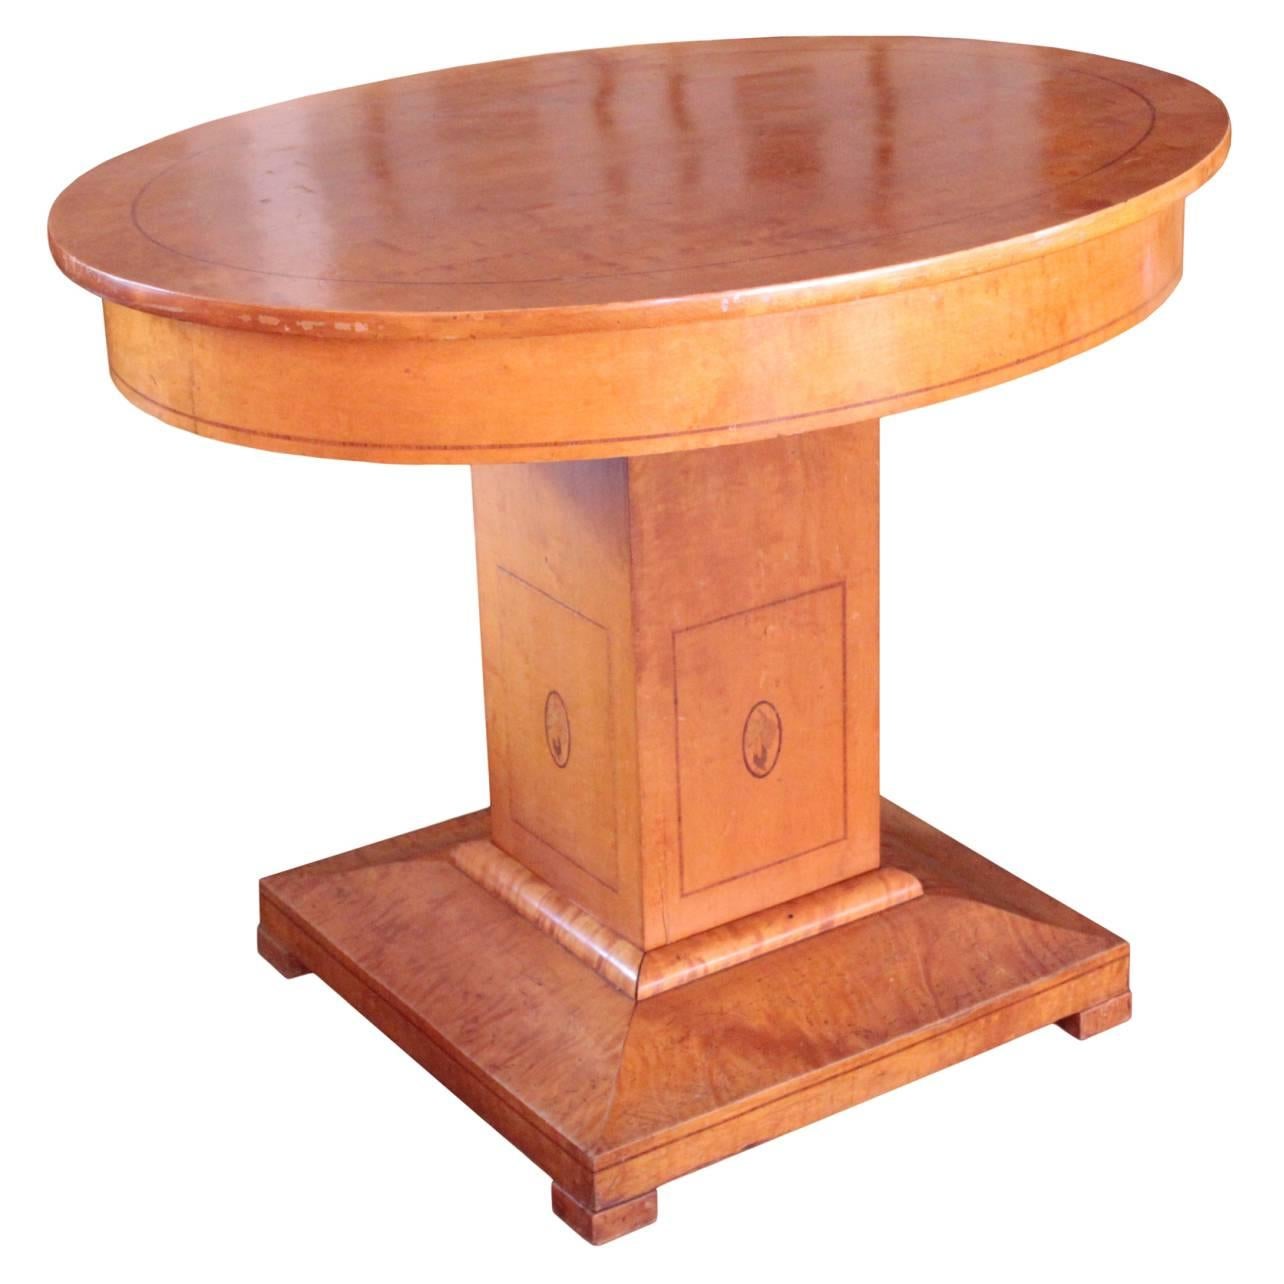 Swedish Jugendstil Period Oval Center Table For Sale